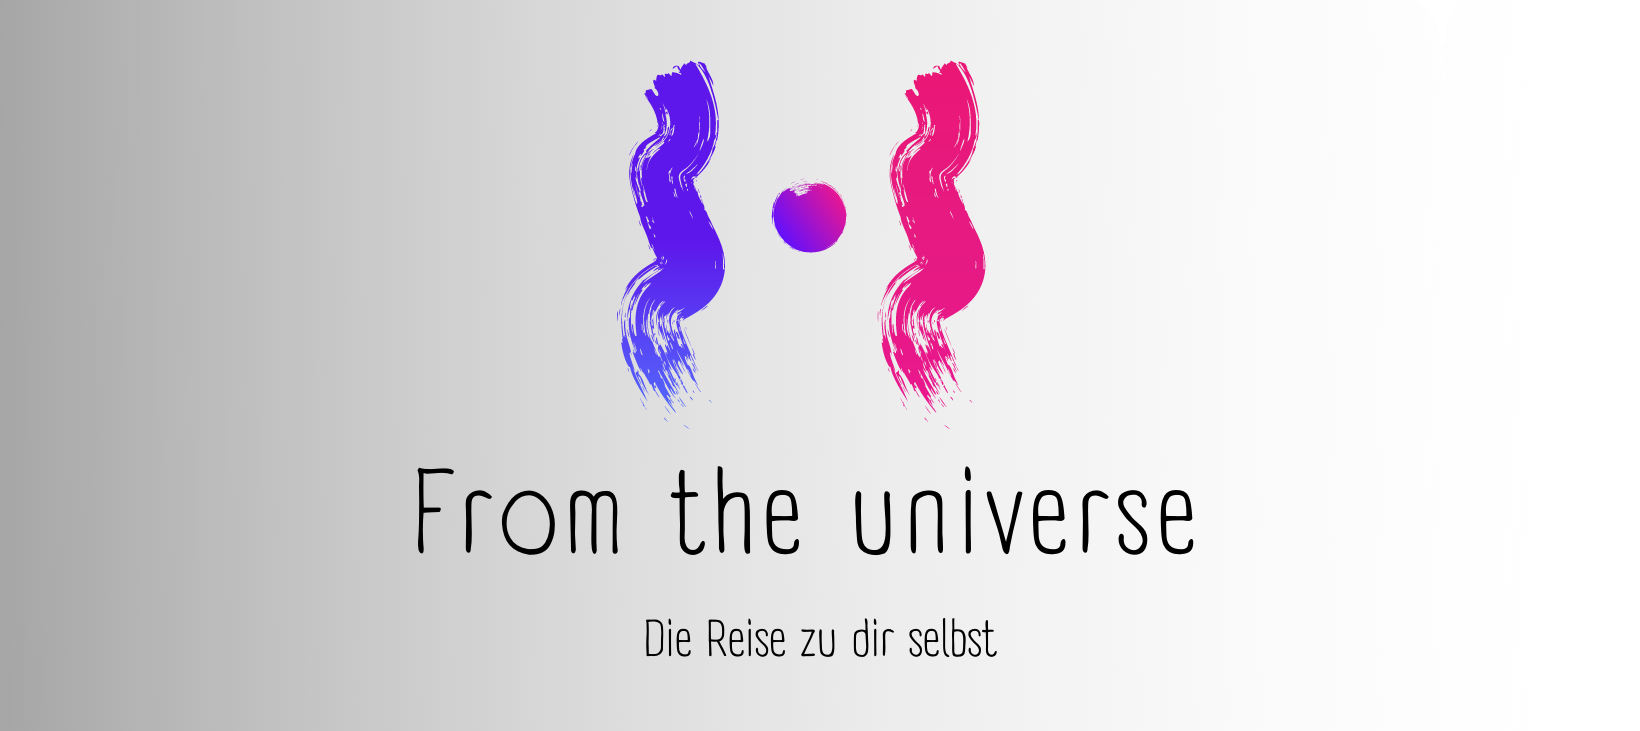 From the universe - Die Reise zu dir selbst